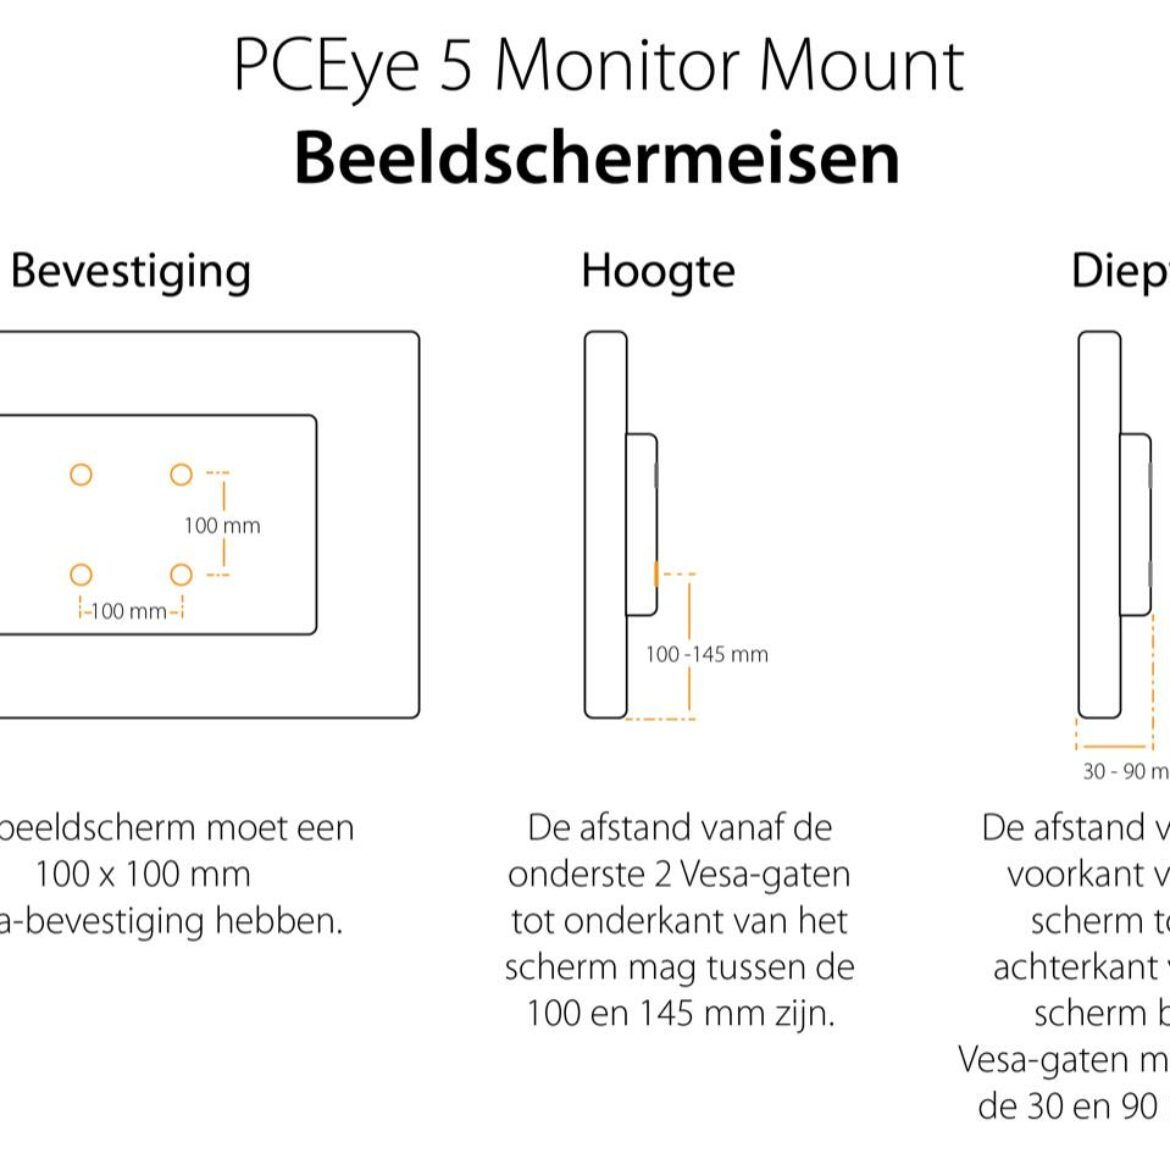 PCEye 5 Monitor Mount